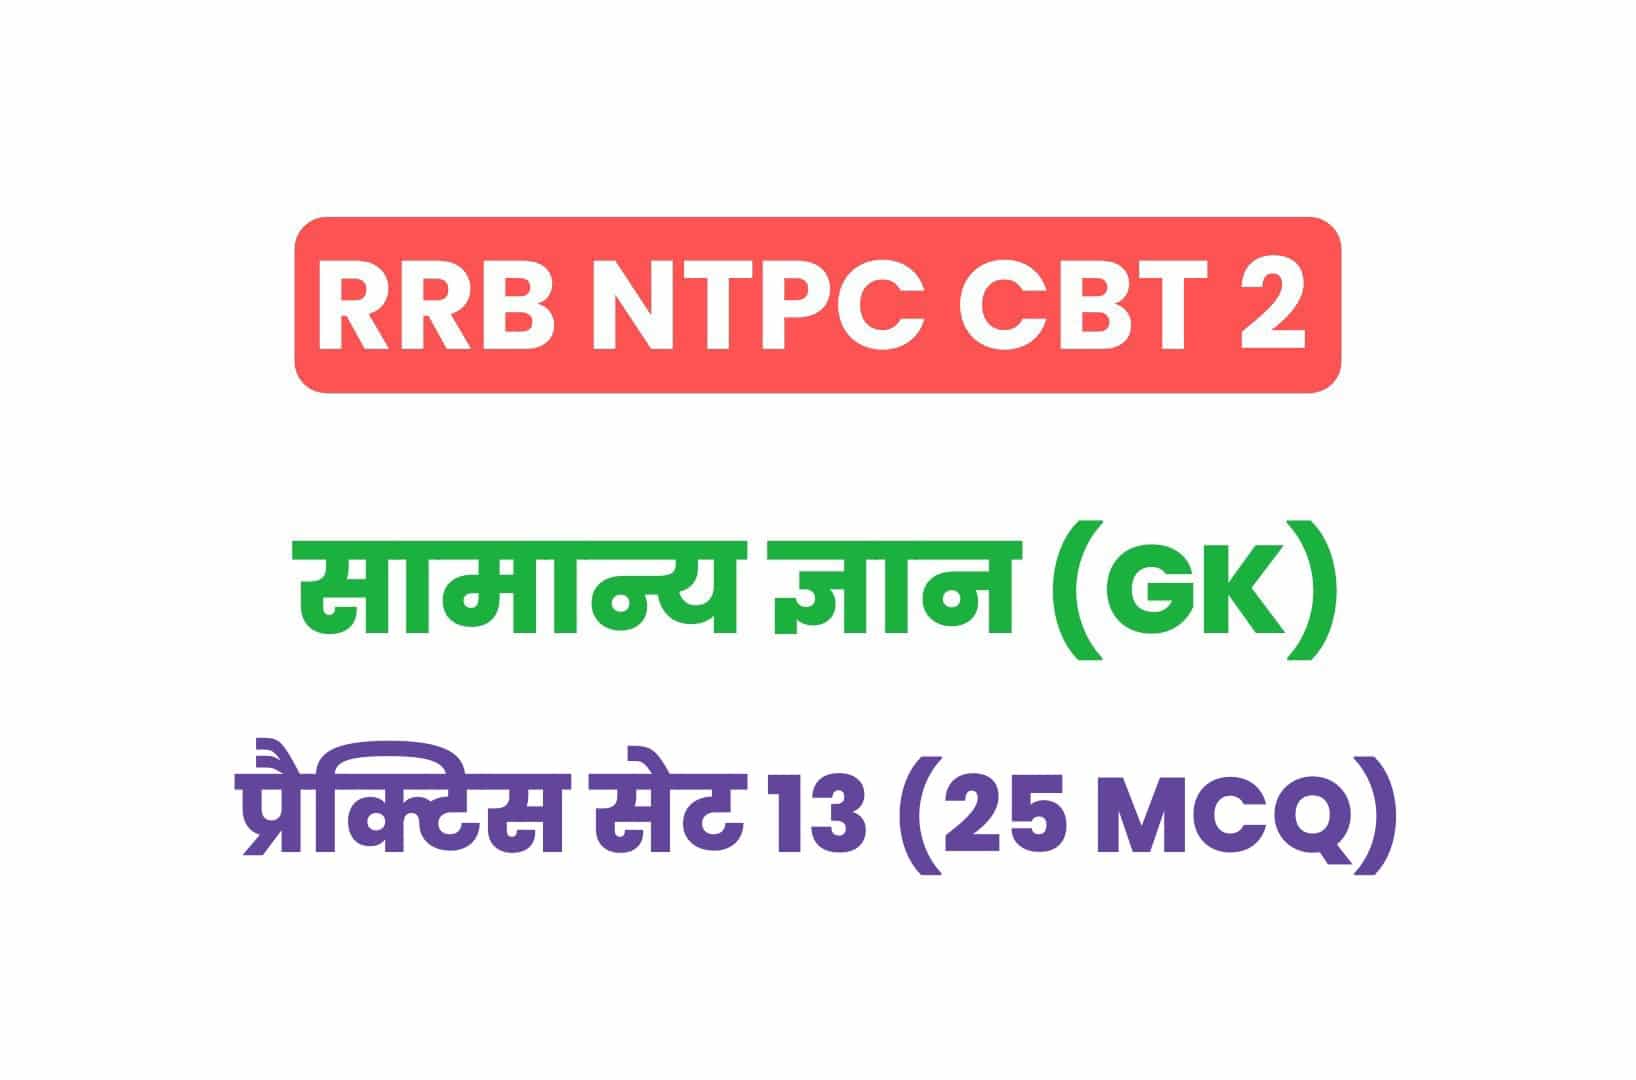 RRB NTPC CBT 2 GK प्रैक्टिस सेट 13: सामान्य ज्ञान के महत्वपूर्ण प्रश्नों का संग्रह, देखें